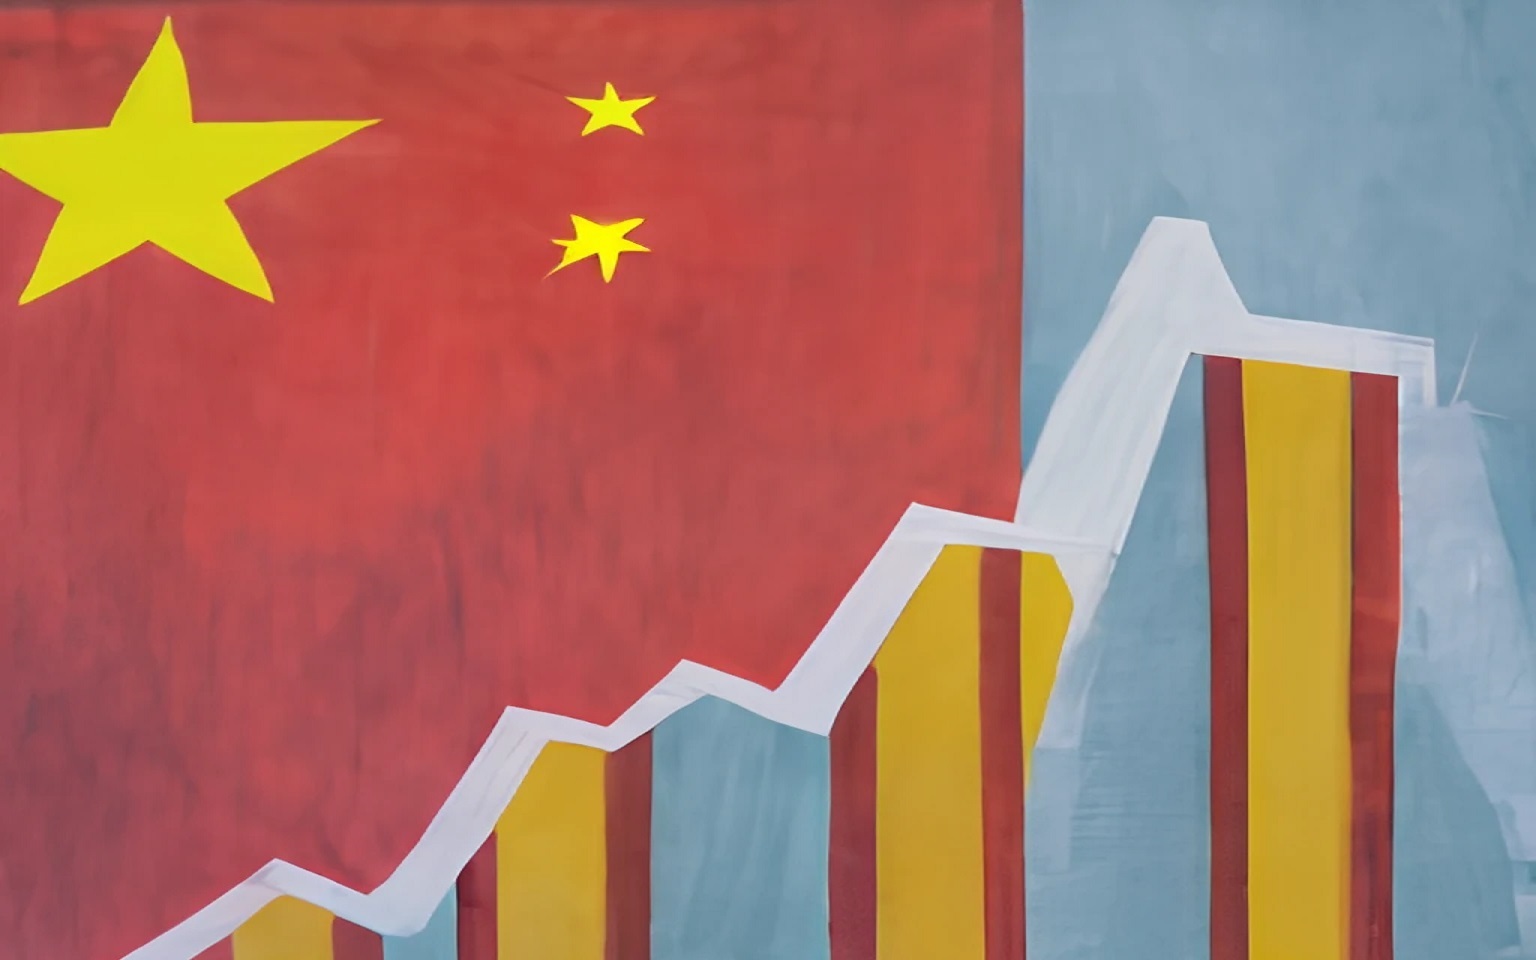 Wirtschaftswachstum in China Rückkehr trotz Hindernissen